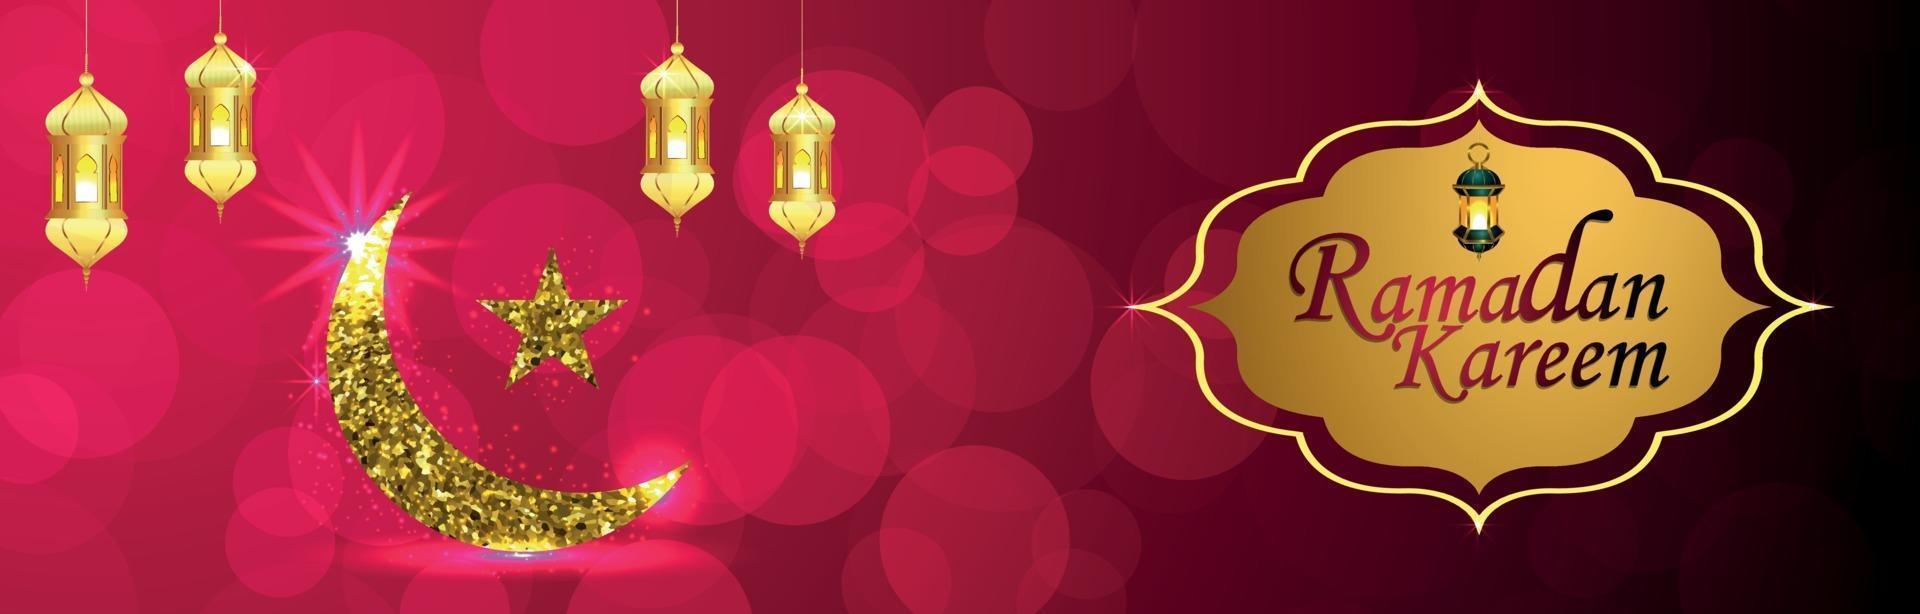 banner ou cabeçalho ramadan kareem com lua dourada e lanterna vetor